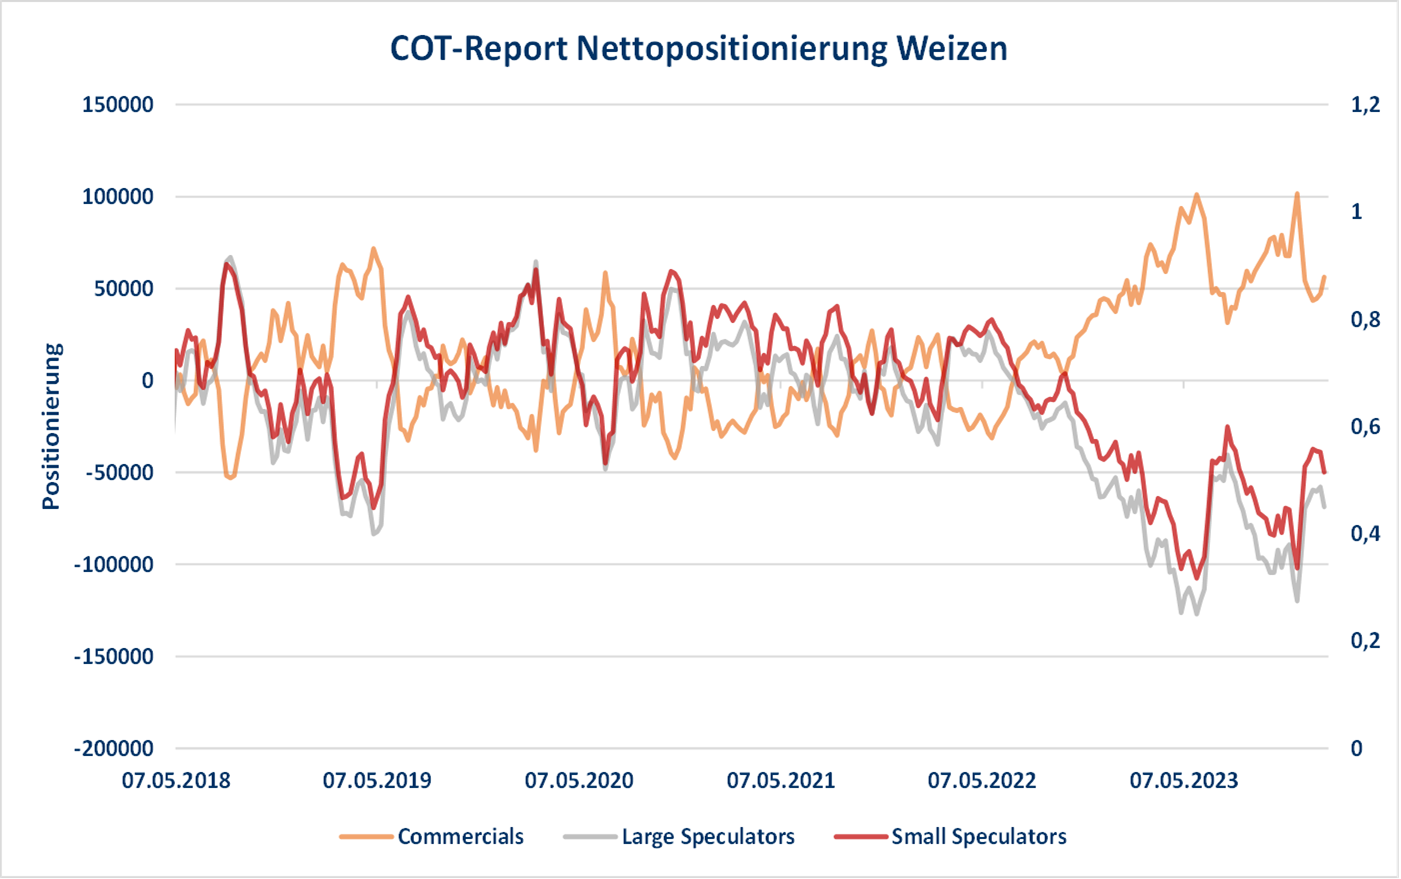 COT-Report-Diagramm zur Nettositionierung im US-Weizenmarkt, zeigt Trends von Marktteilnehmern.